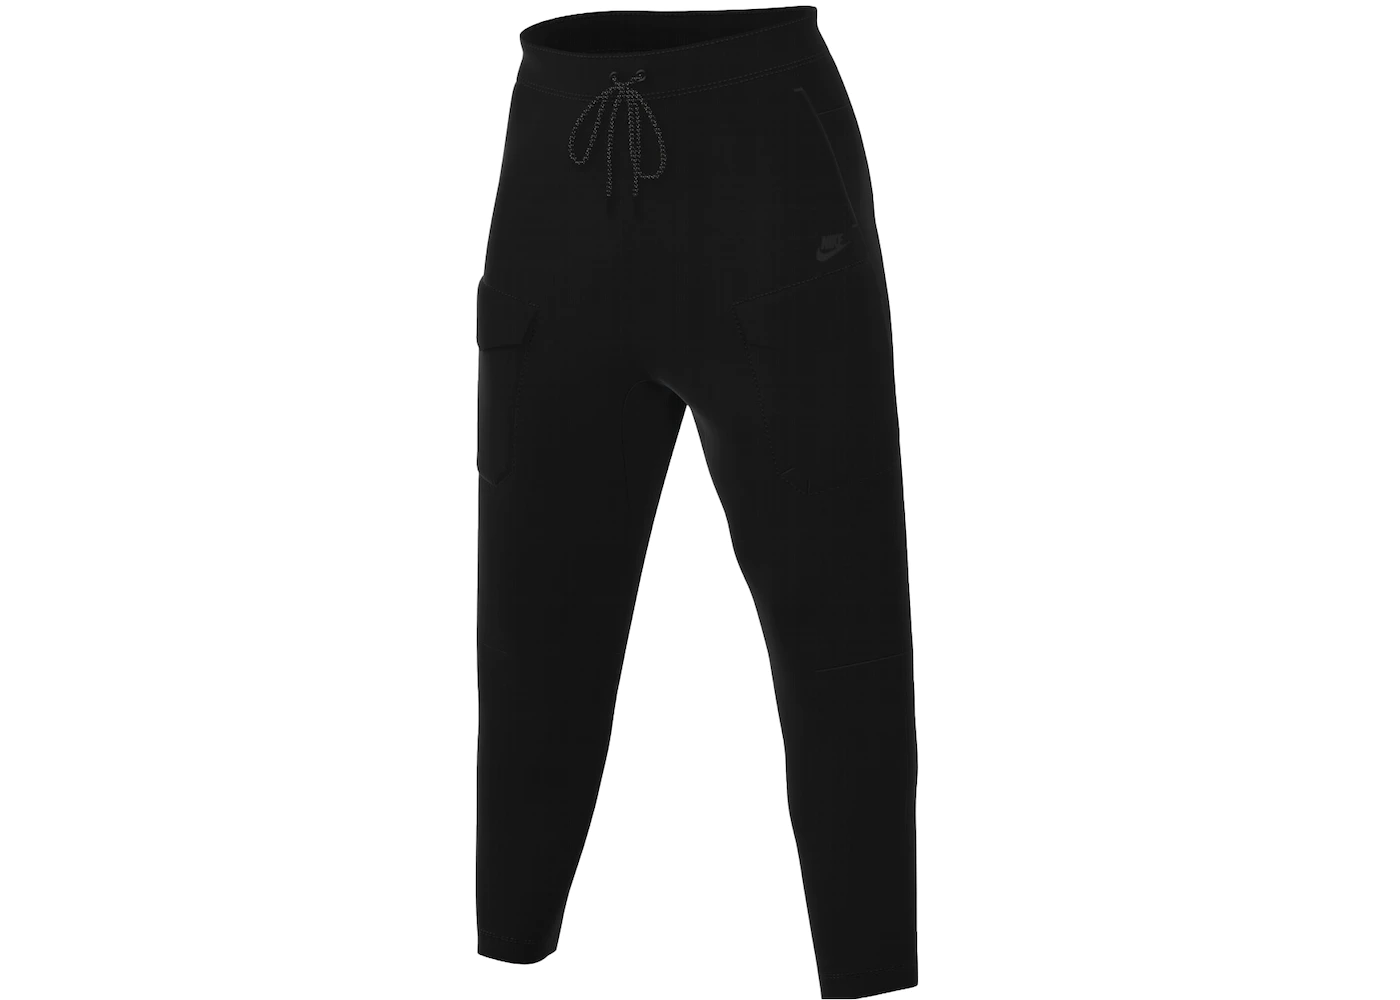 Nike Sportswear Tech Fleece Utility Trousers Black/Black